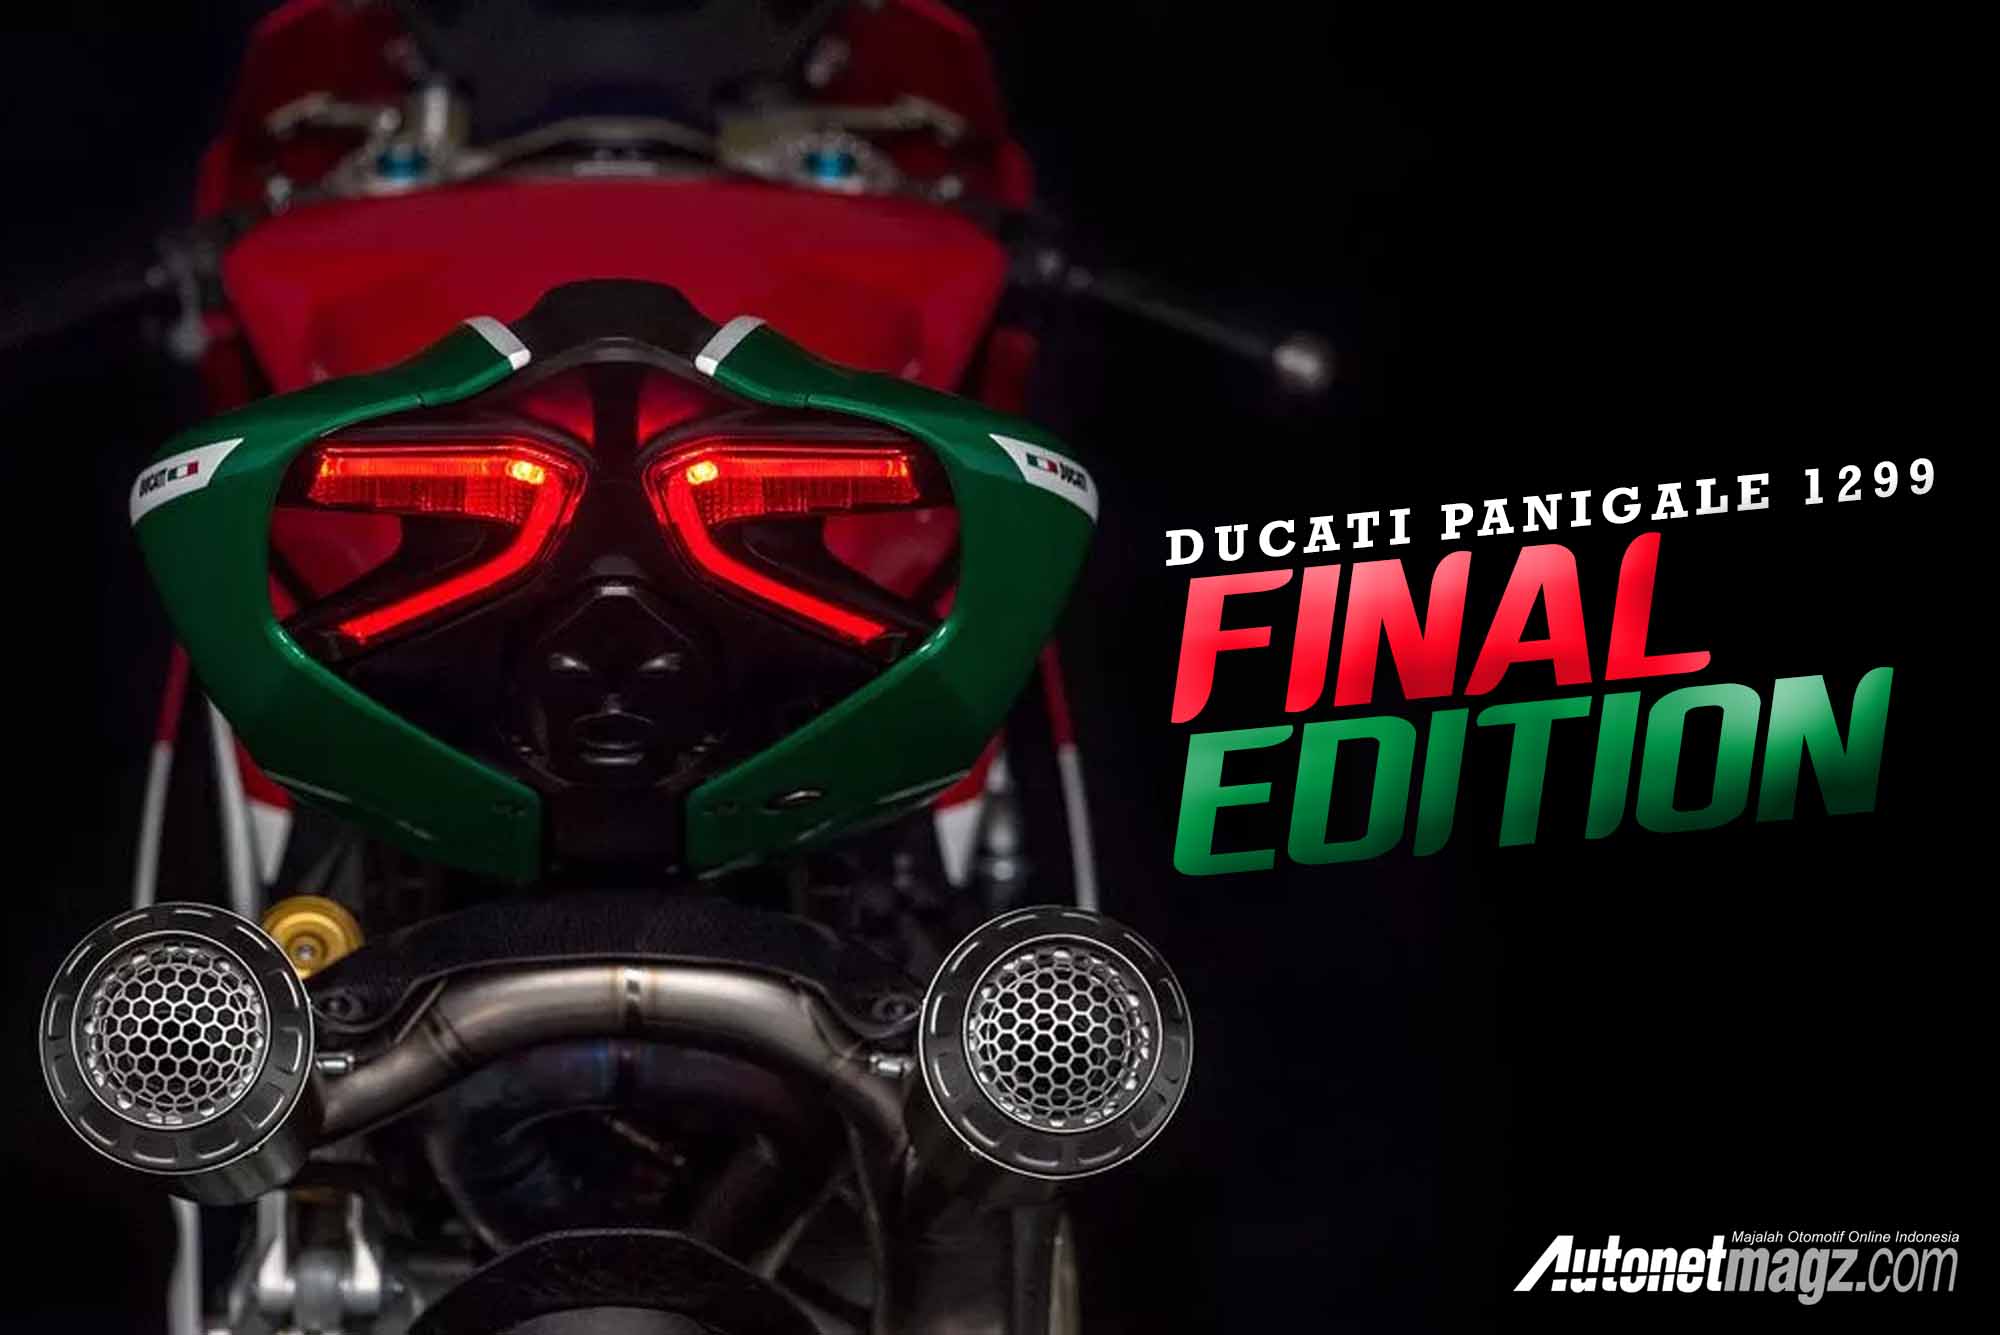 , Ducati Panigale 1299 Final Edition cover: Ducati Panigale 1299 Final Edition cover